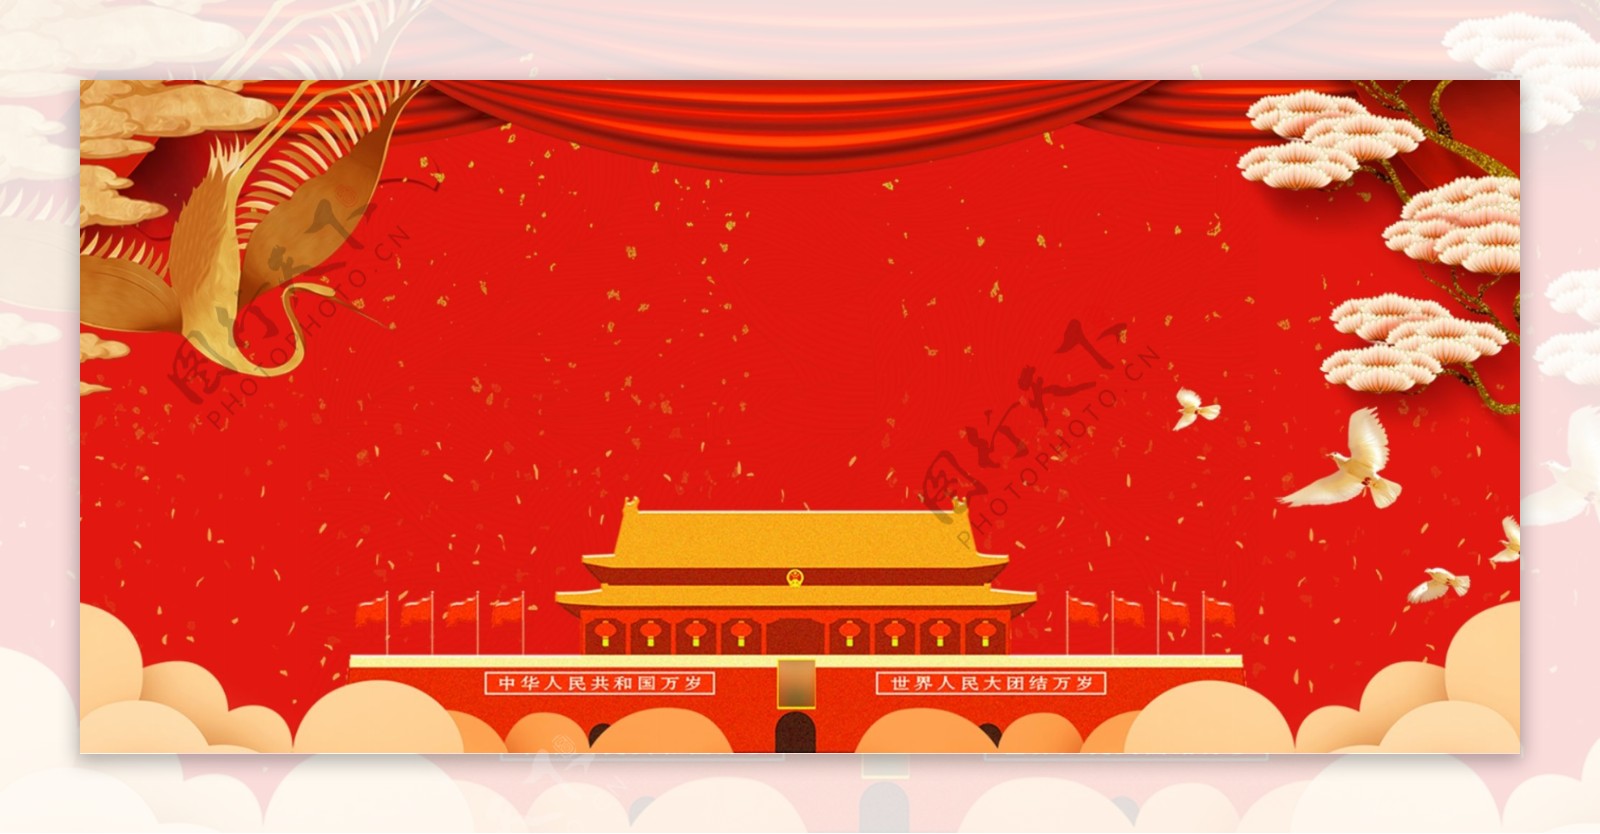 毛泽东诞辰红色海报